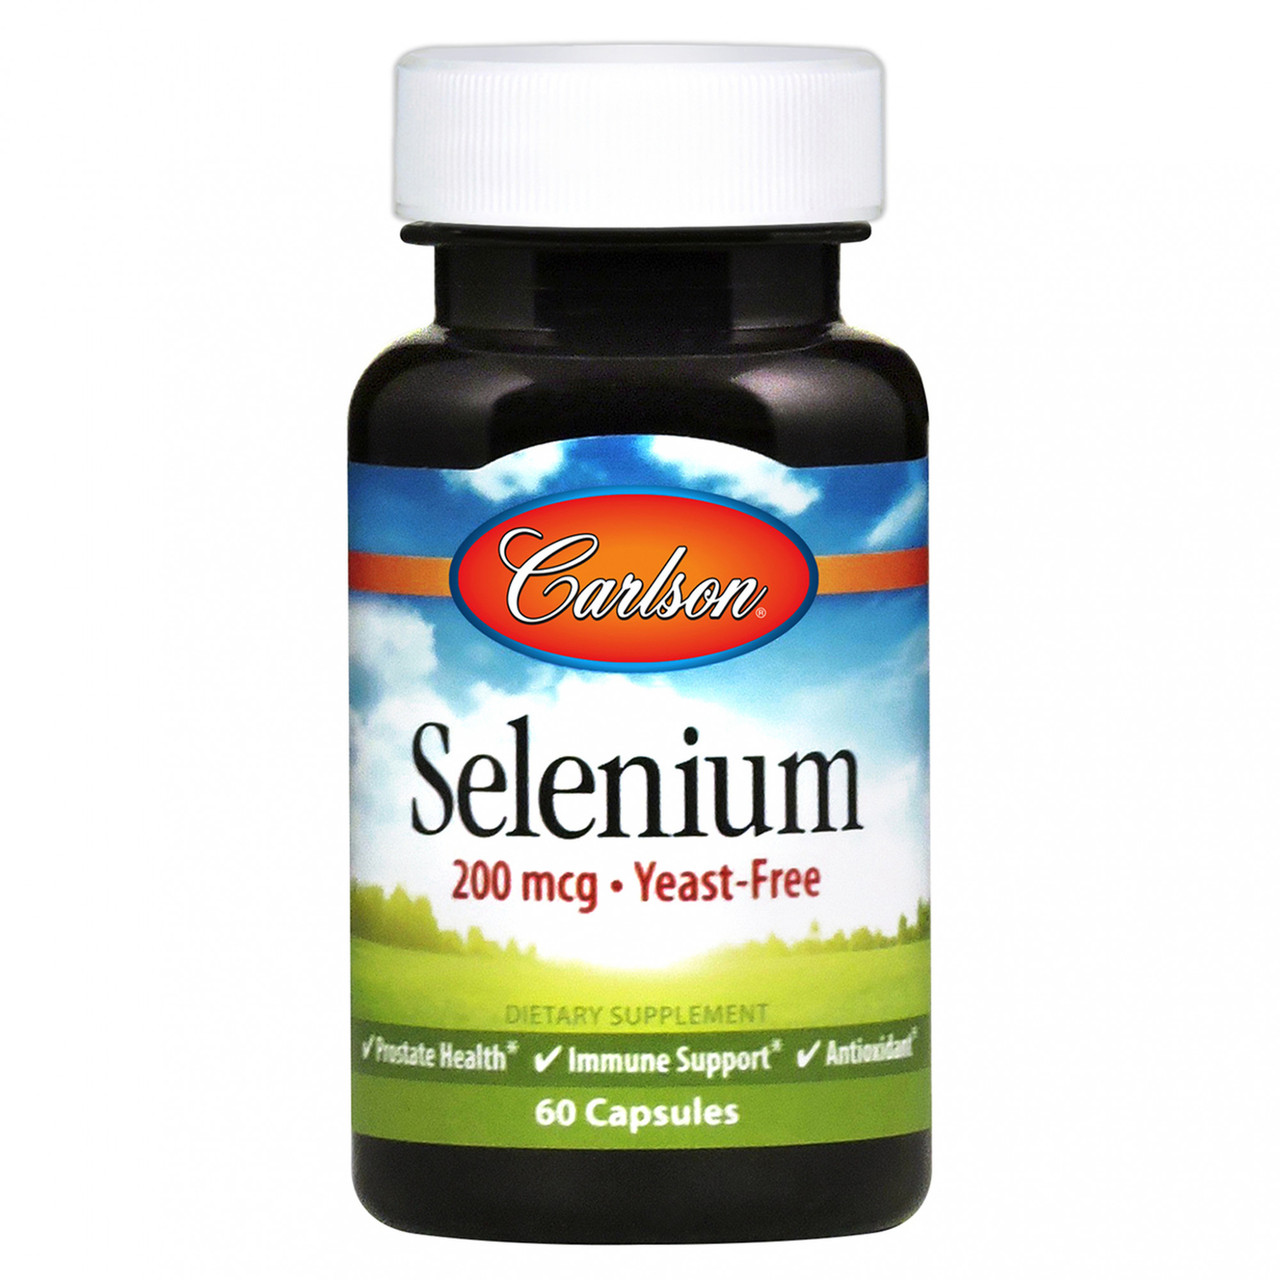 Selenium 200 mcg 60 caps